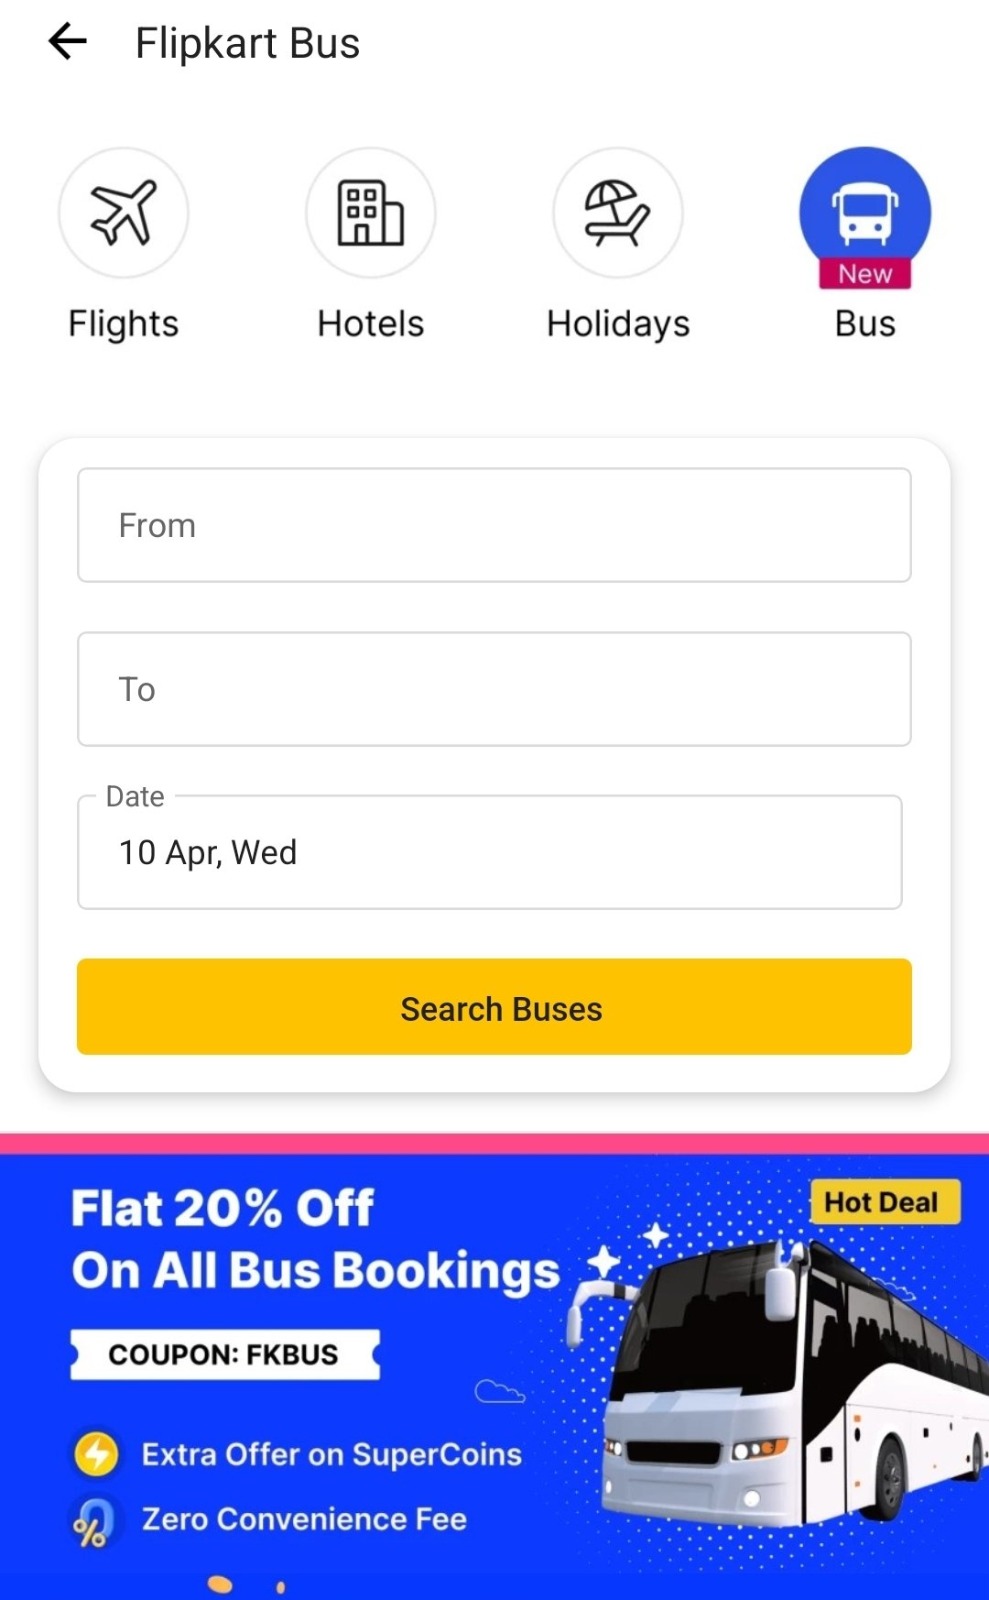 Flipkart Bus Booking Service